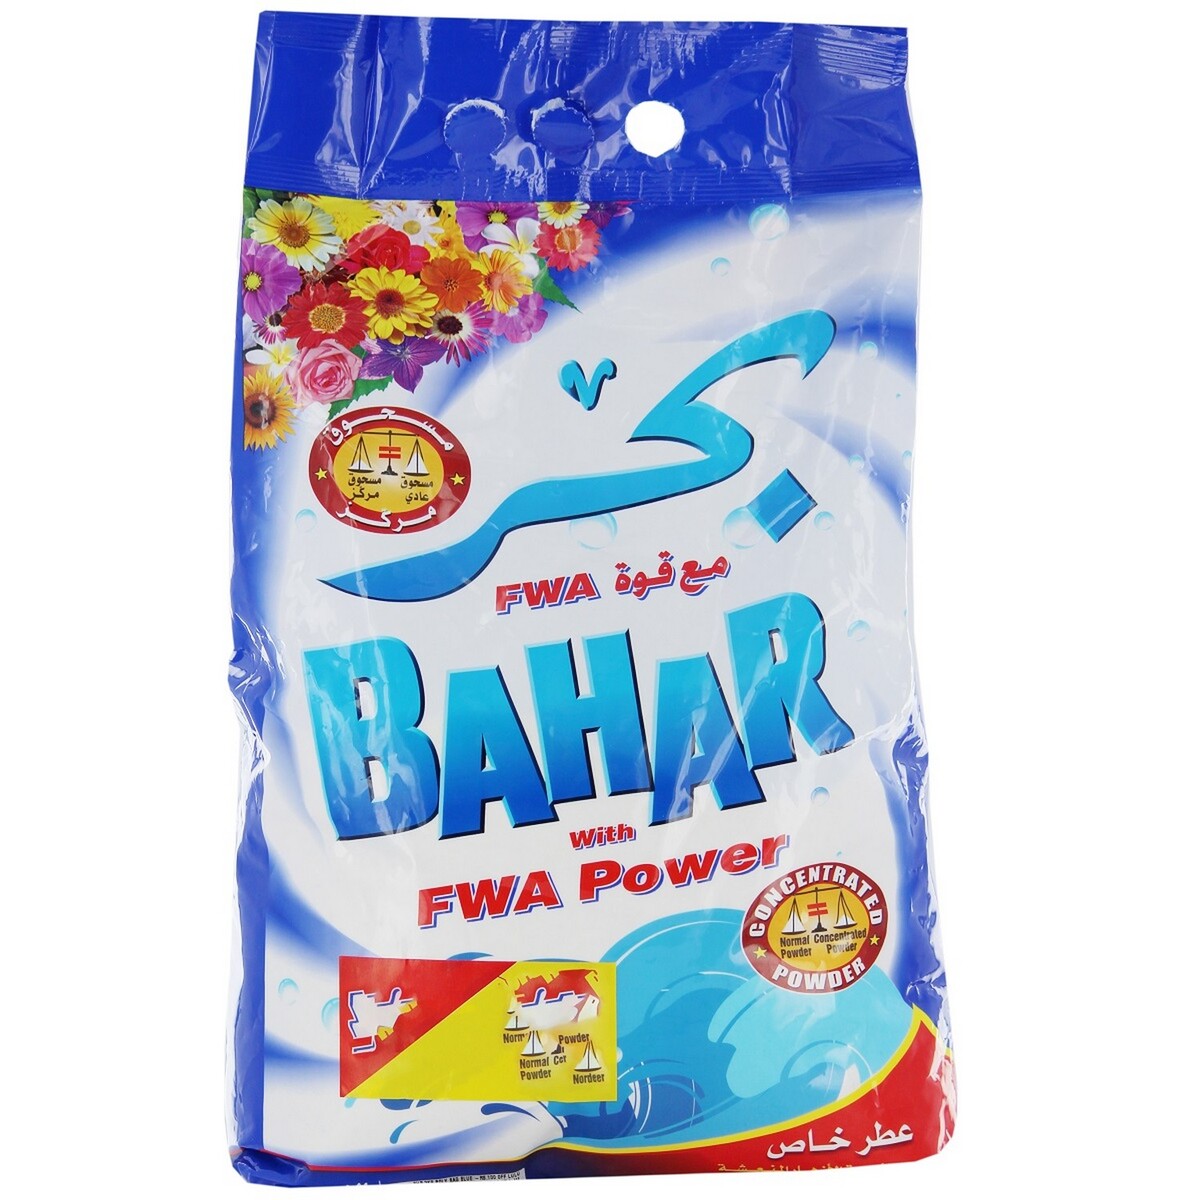 Bahar Detergent Powder Blue 3Kg